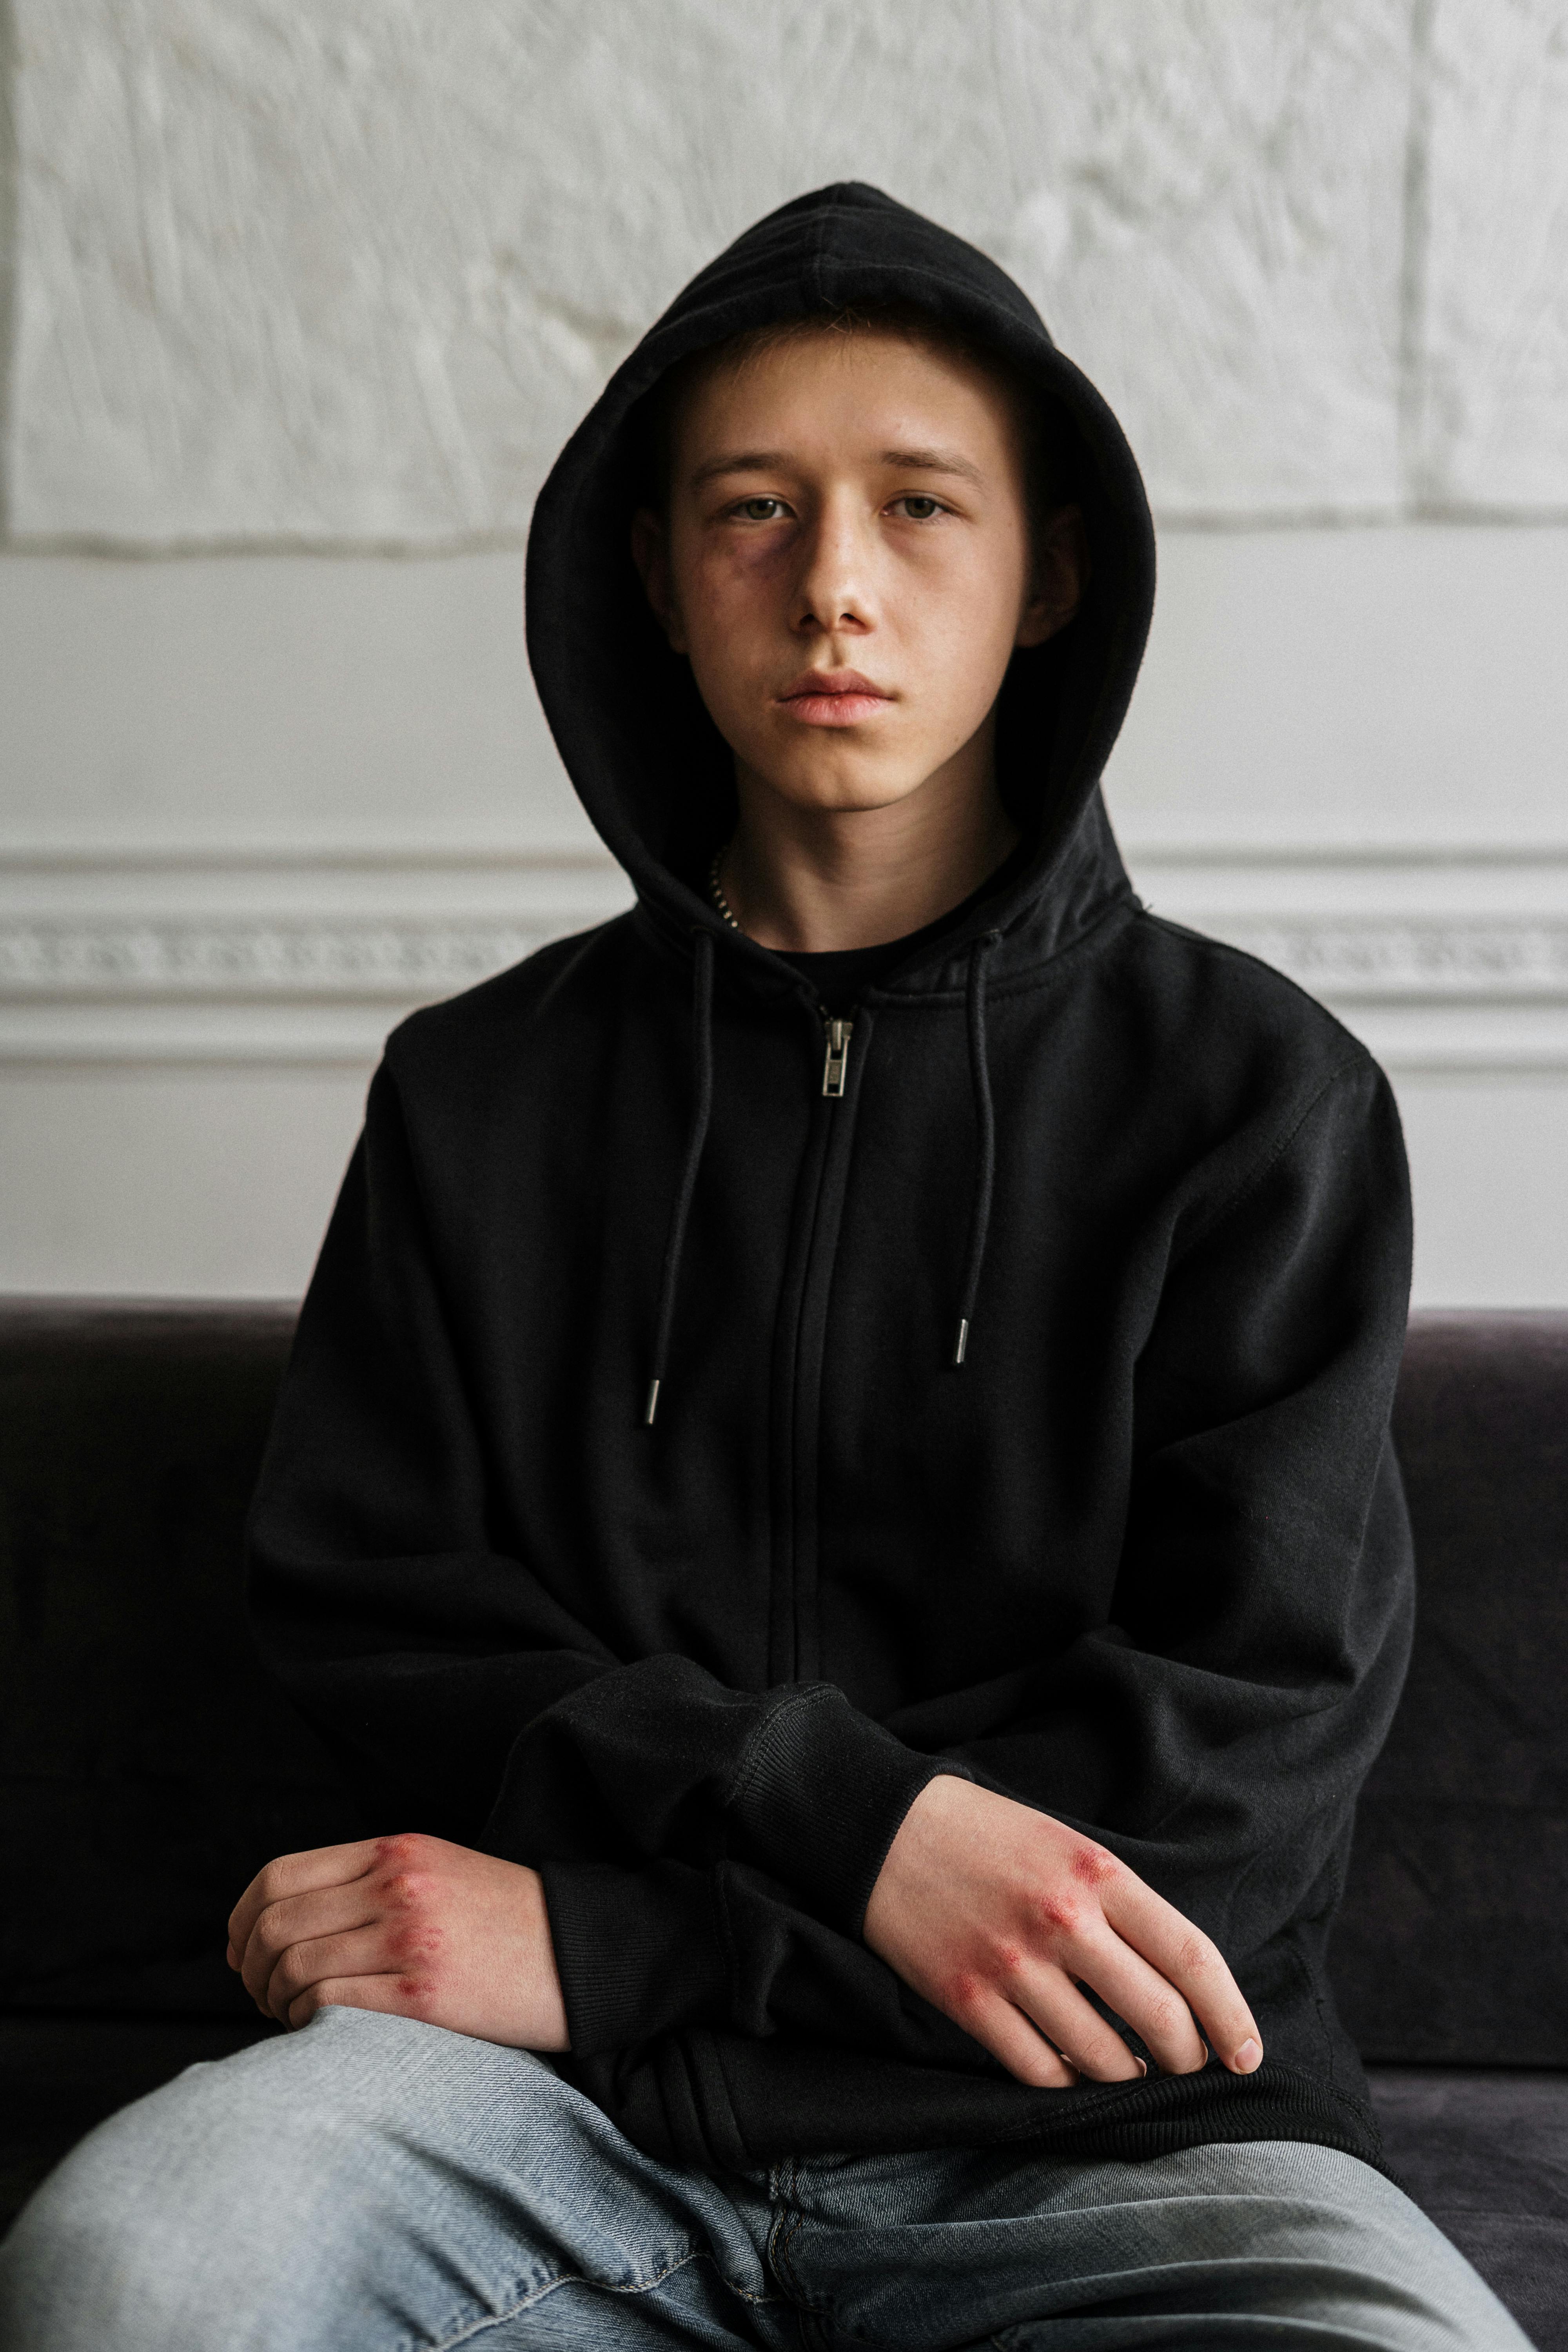 Un adolescente con aspecto serio | Fuente: Pexels